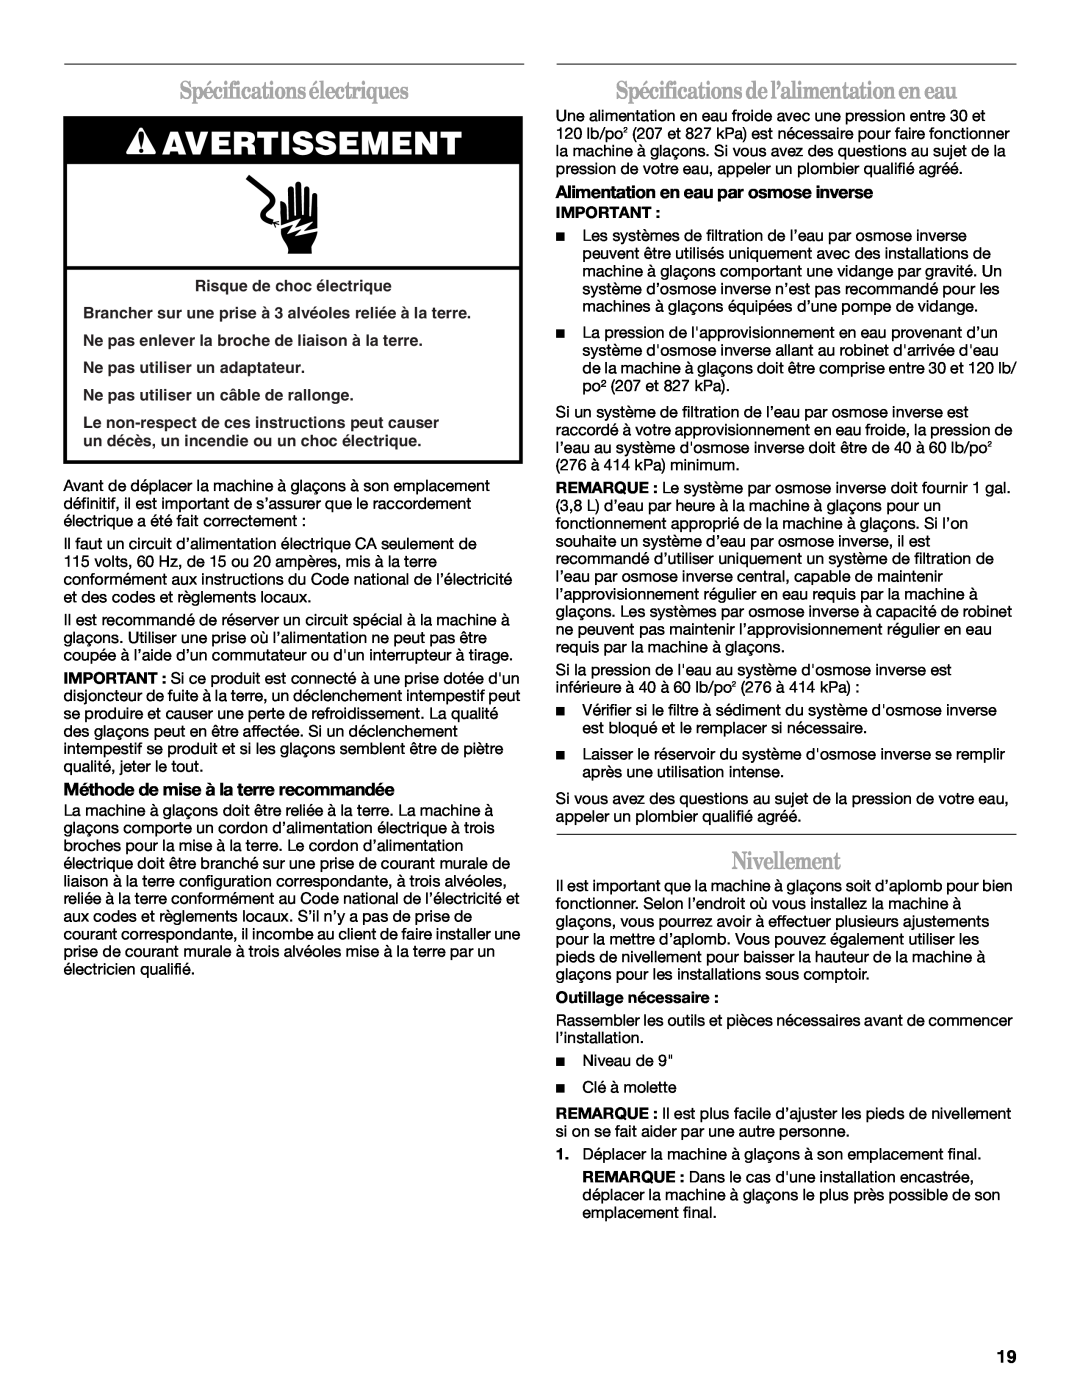 Whirlpool W10206421B manual Spécificationsélectriques, Spécifications del’alimentationen eau, Nivellement, Avertissement 